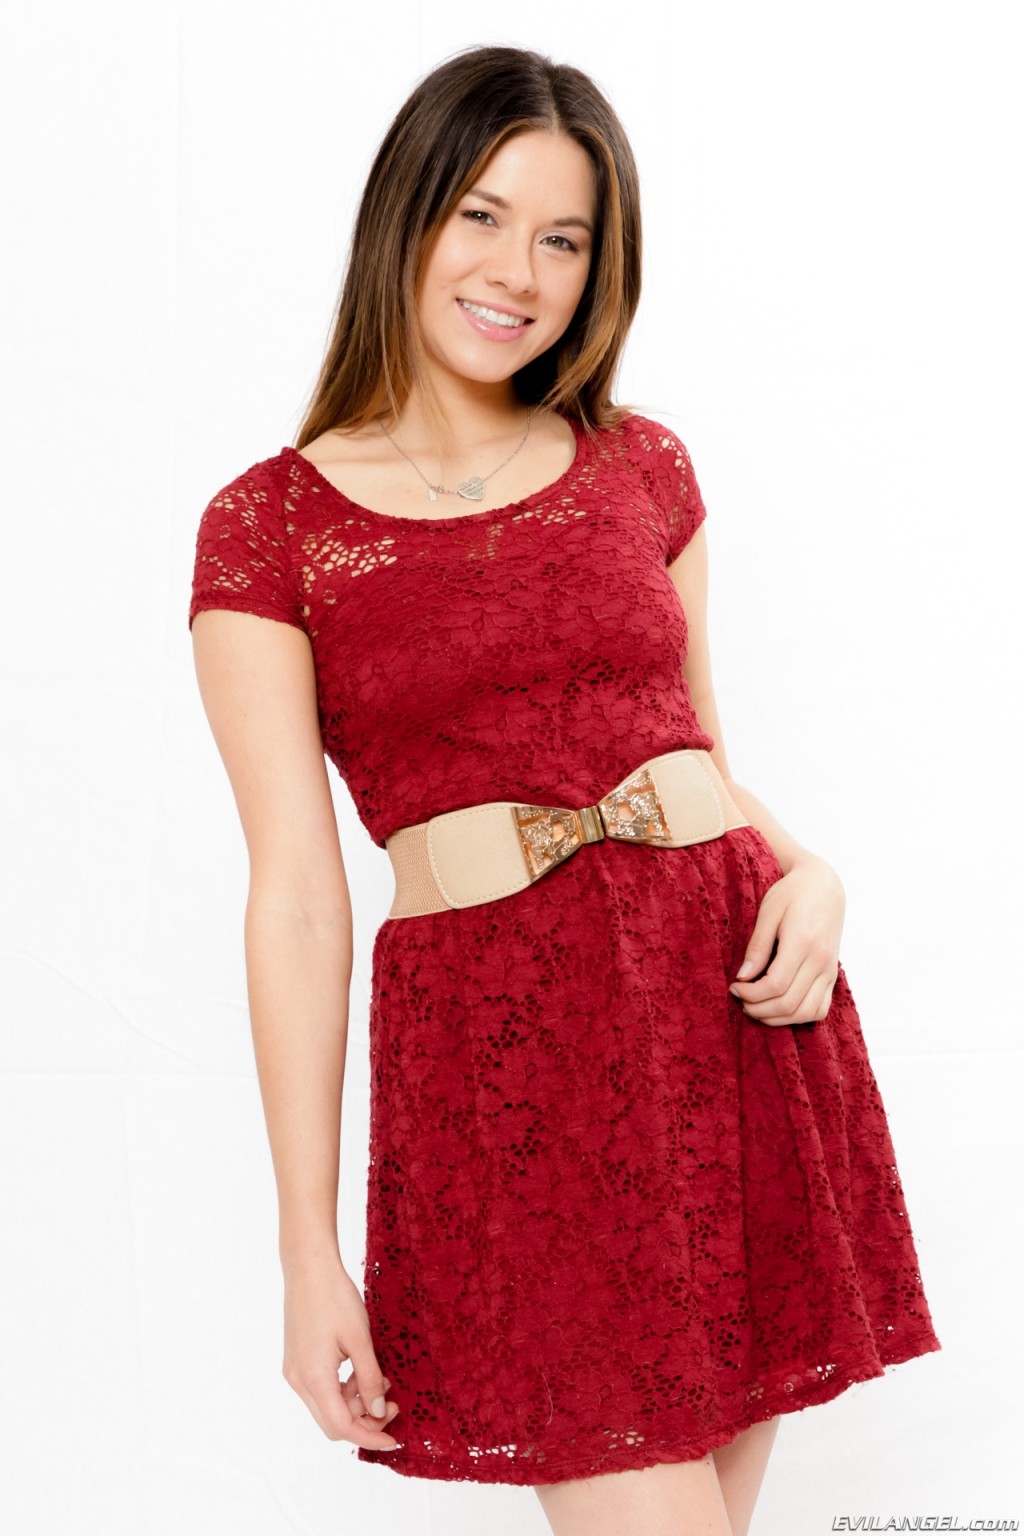 Shyla Jennings in red dress #76437988